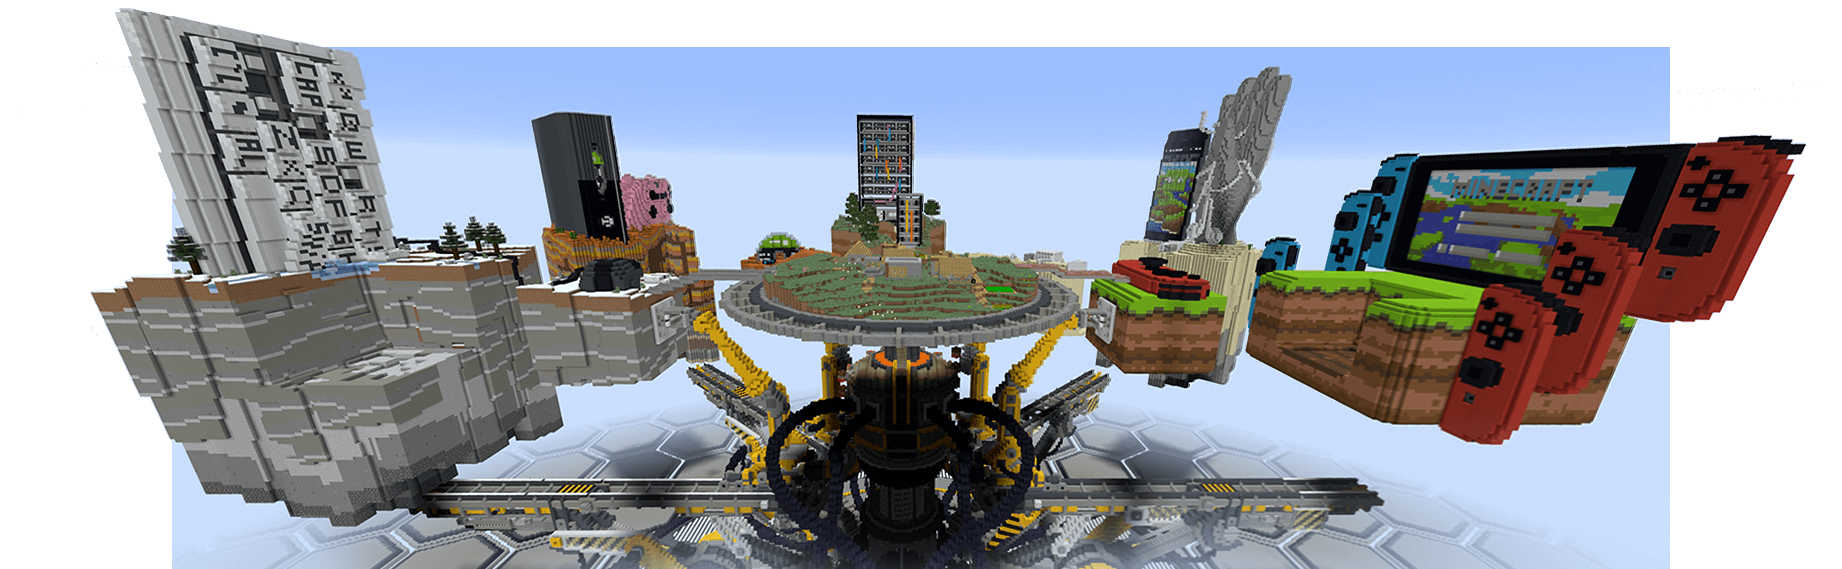 Minecraft Togetherness Machine, представляющая платформы, на которых можно играть в Minecraft: ПК, Xbox, мобильные устройства и Nintendo Switch.